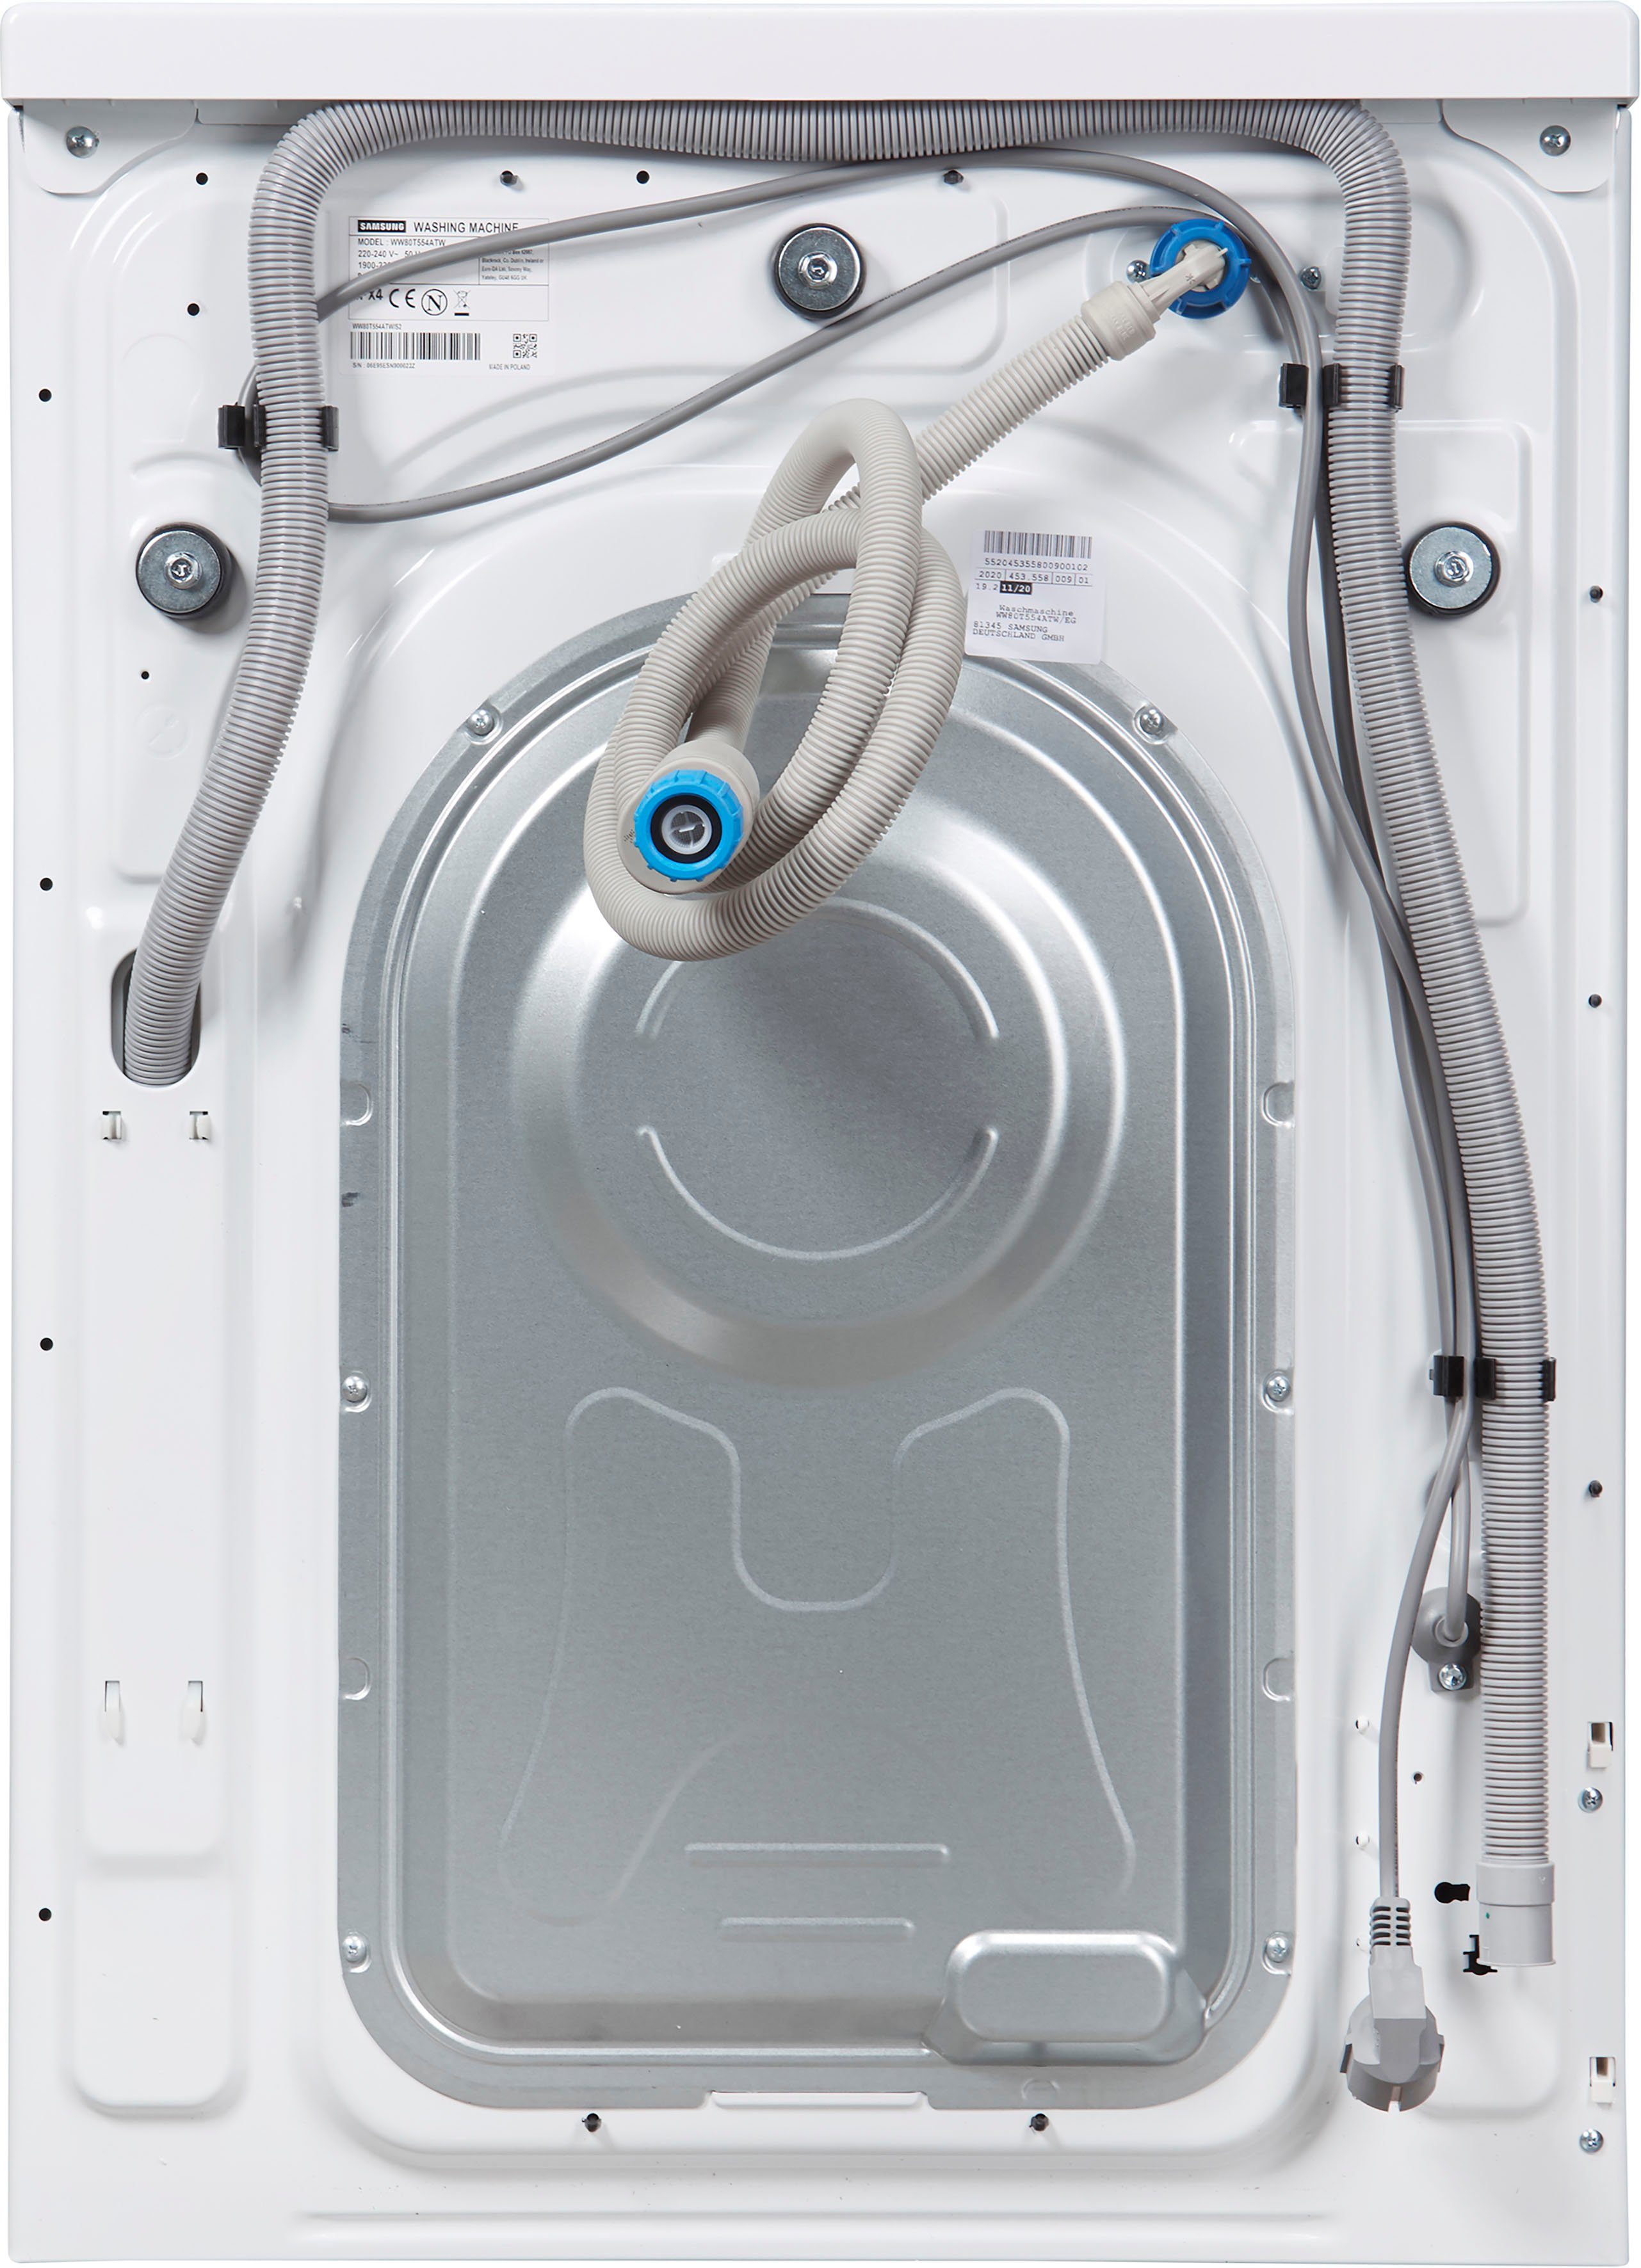 Samsung Waschmaschine WW5500T WW80T554ATW, kg, U/min, 1400 8 AddWash™